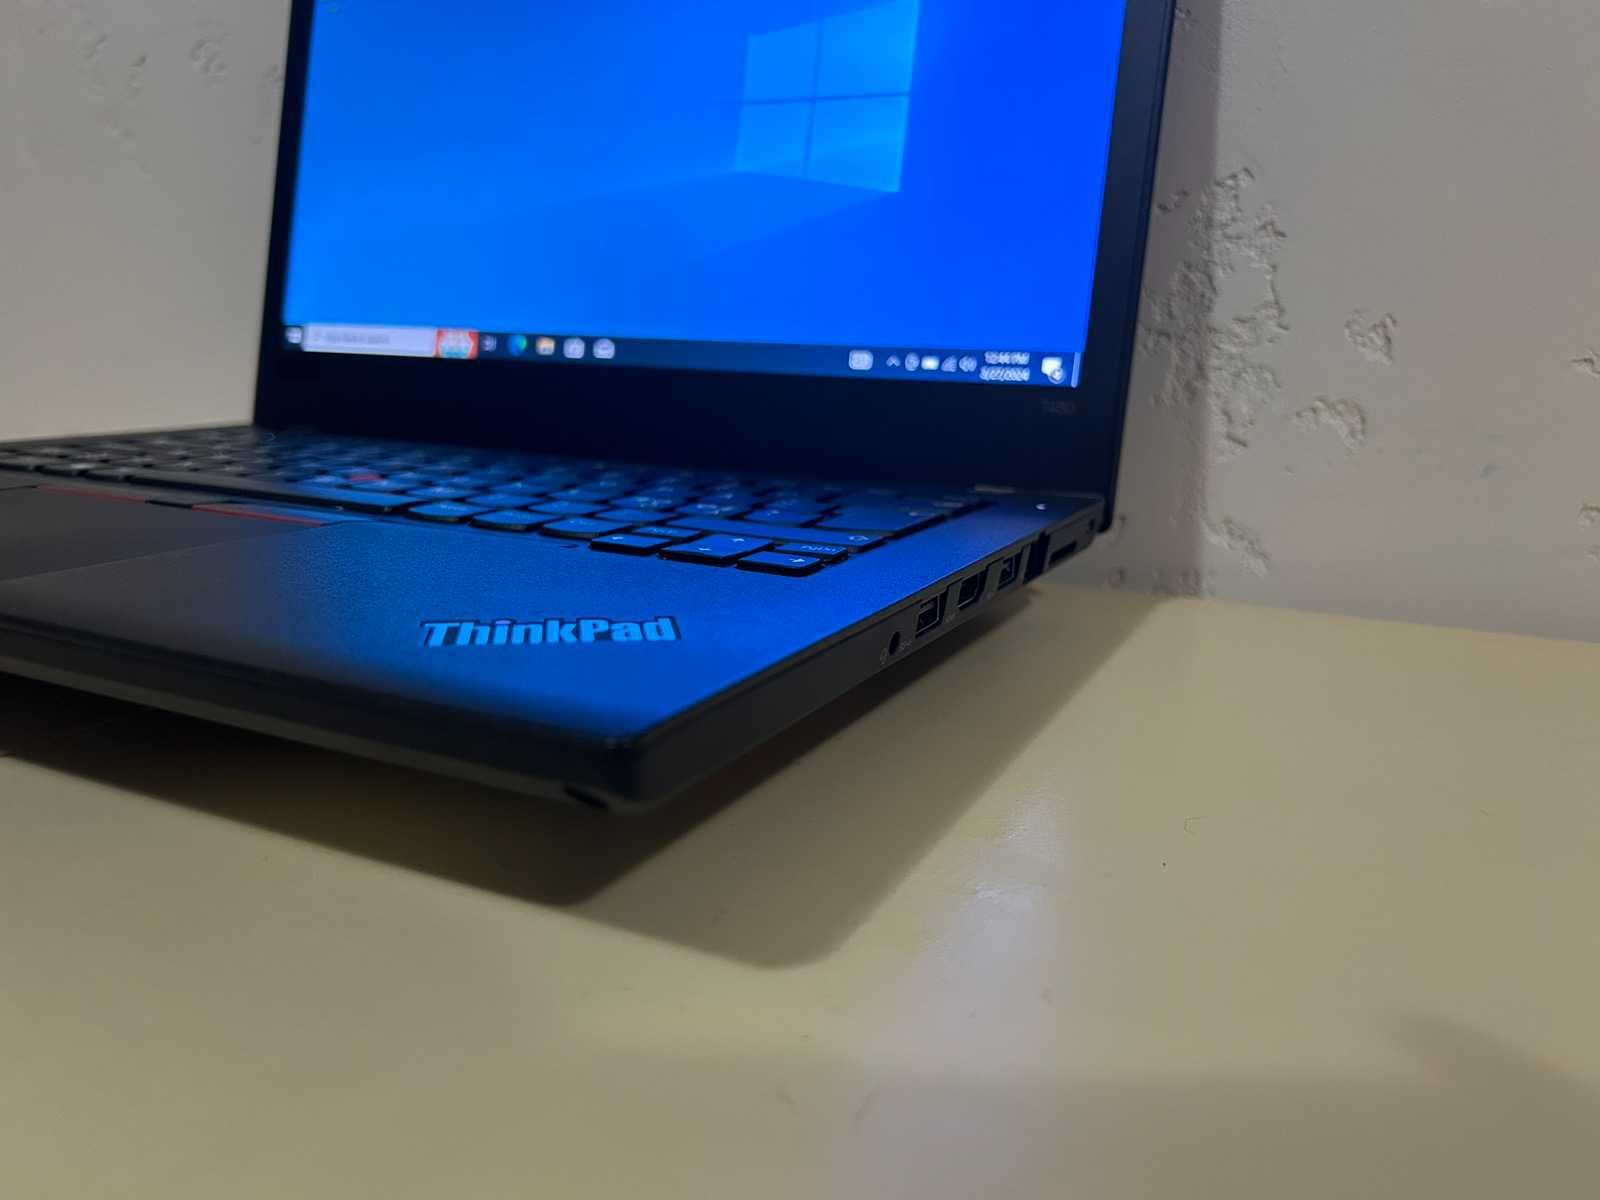 Лаптоп Lenovo Thinkpad Т480 i5-8350U/8GDDR4/256NVMe/14"FHD/12м.г/кл.А